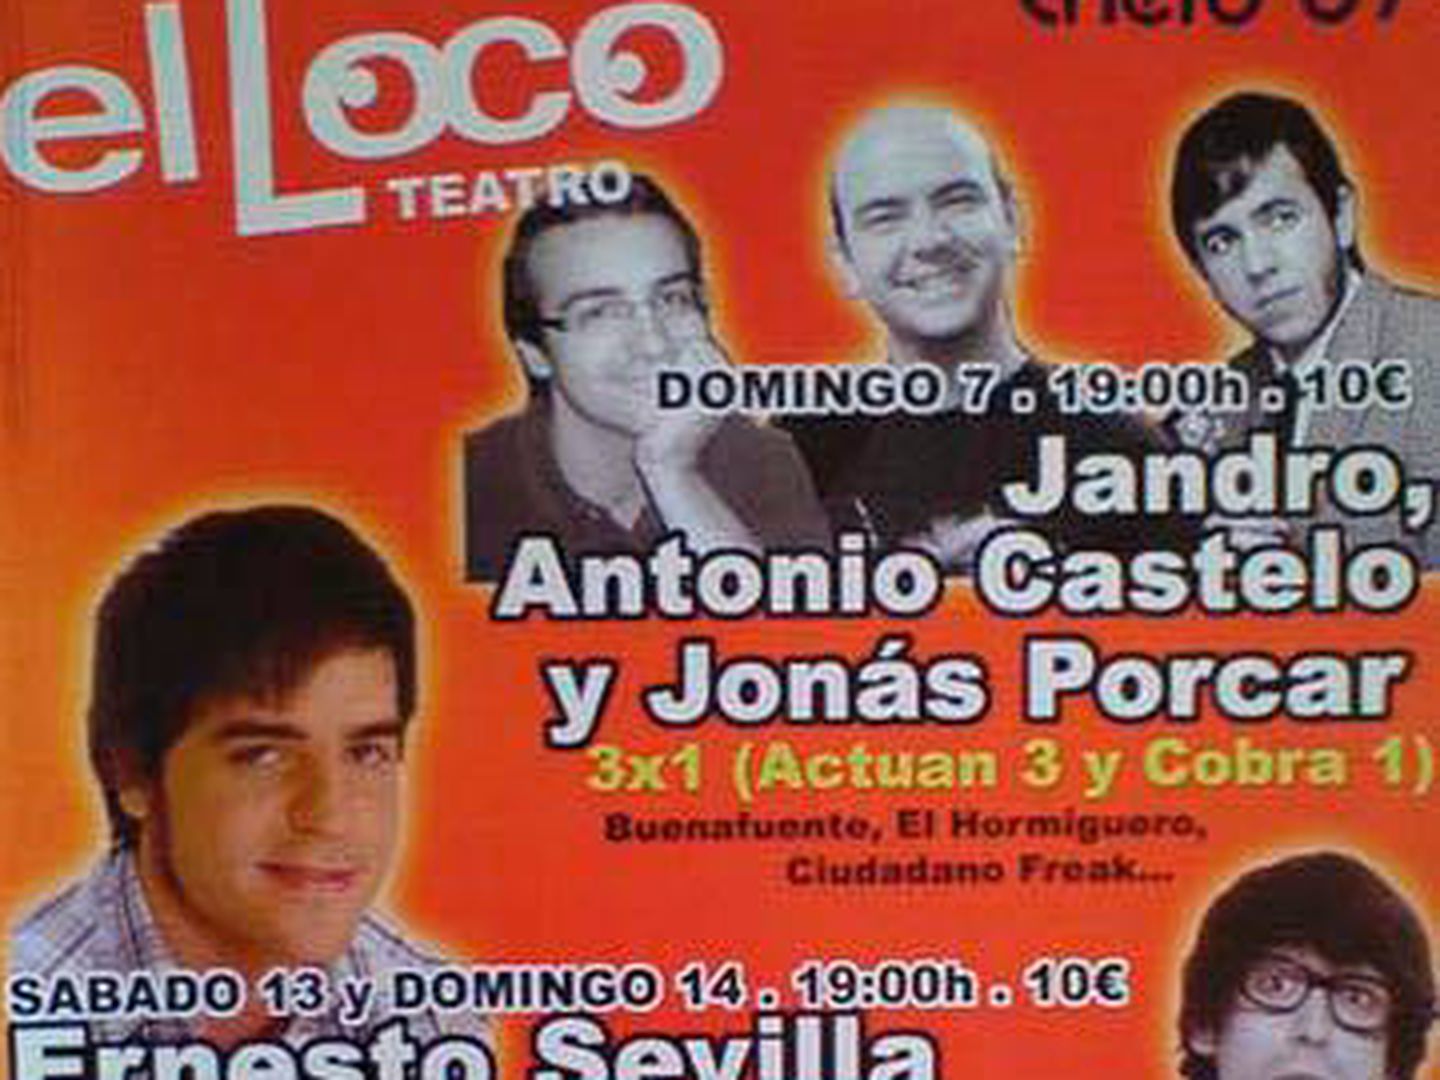 Cartel de la actuación de Jonás Porcar junto a Jandro y Antonio Castelo.